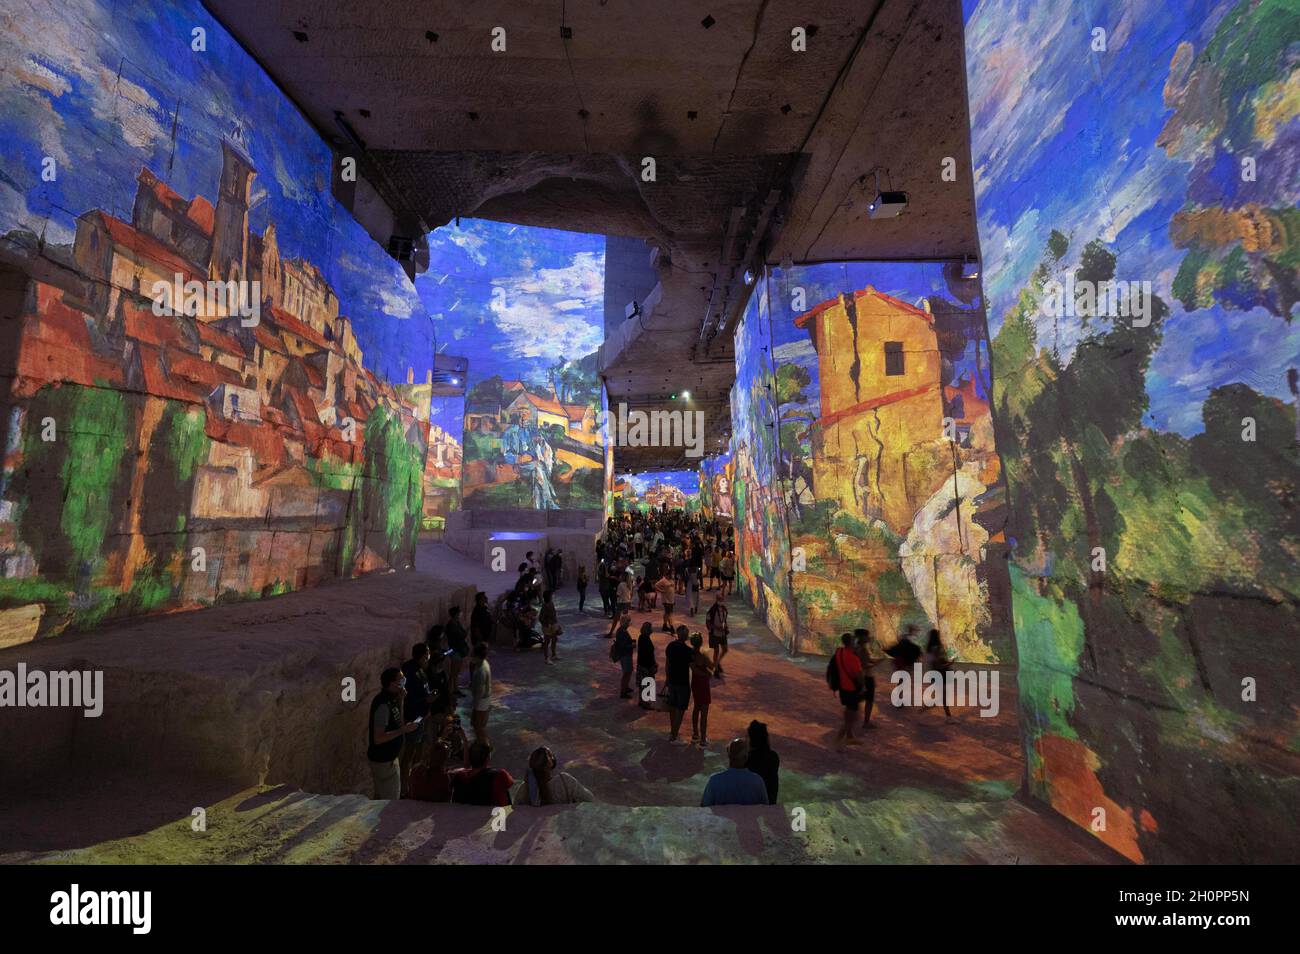 Les Baux de Provence (Francia sud-orientale): “Les Carrieres des Lumieres” ospita mostre digitali immersive dedicate ai grandi artisti prodotti dalla cUL Foto Stock